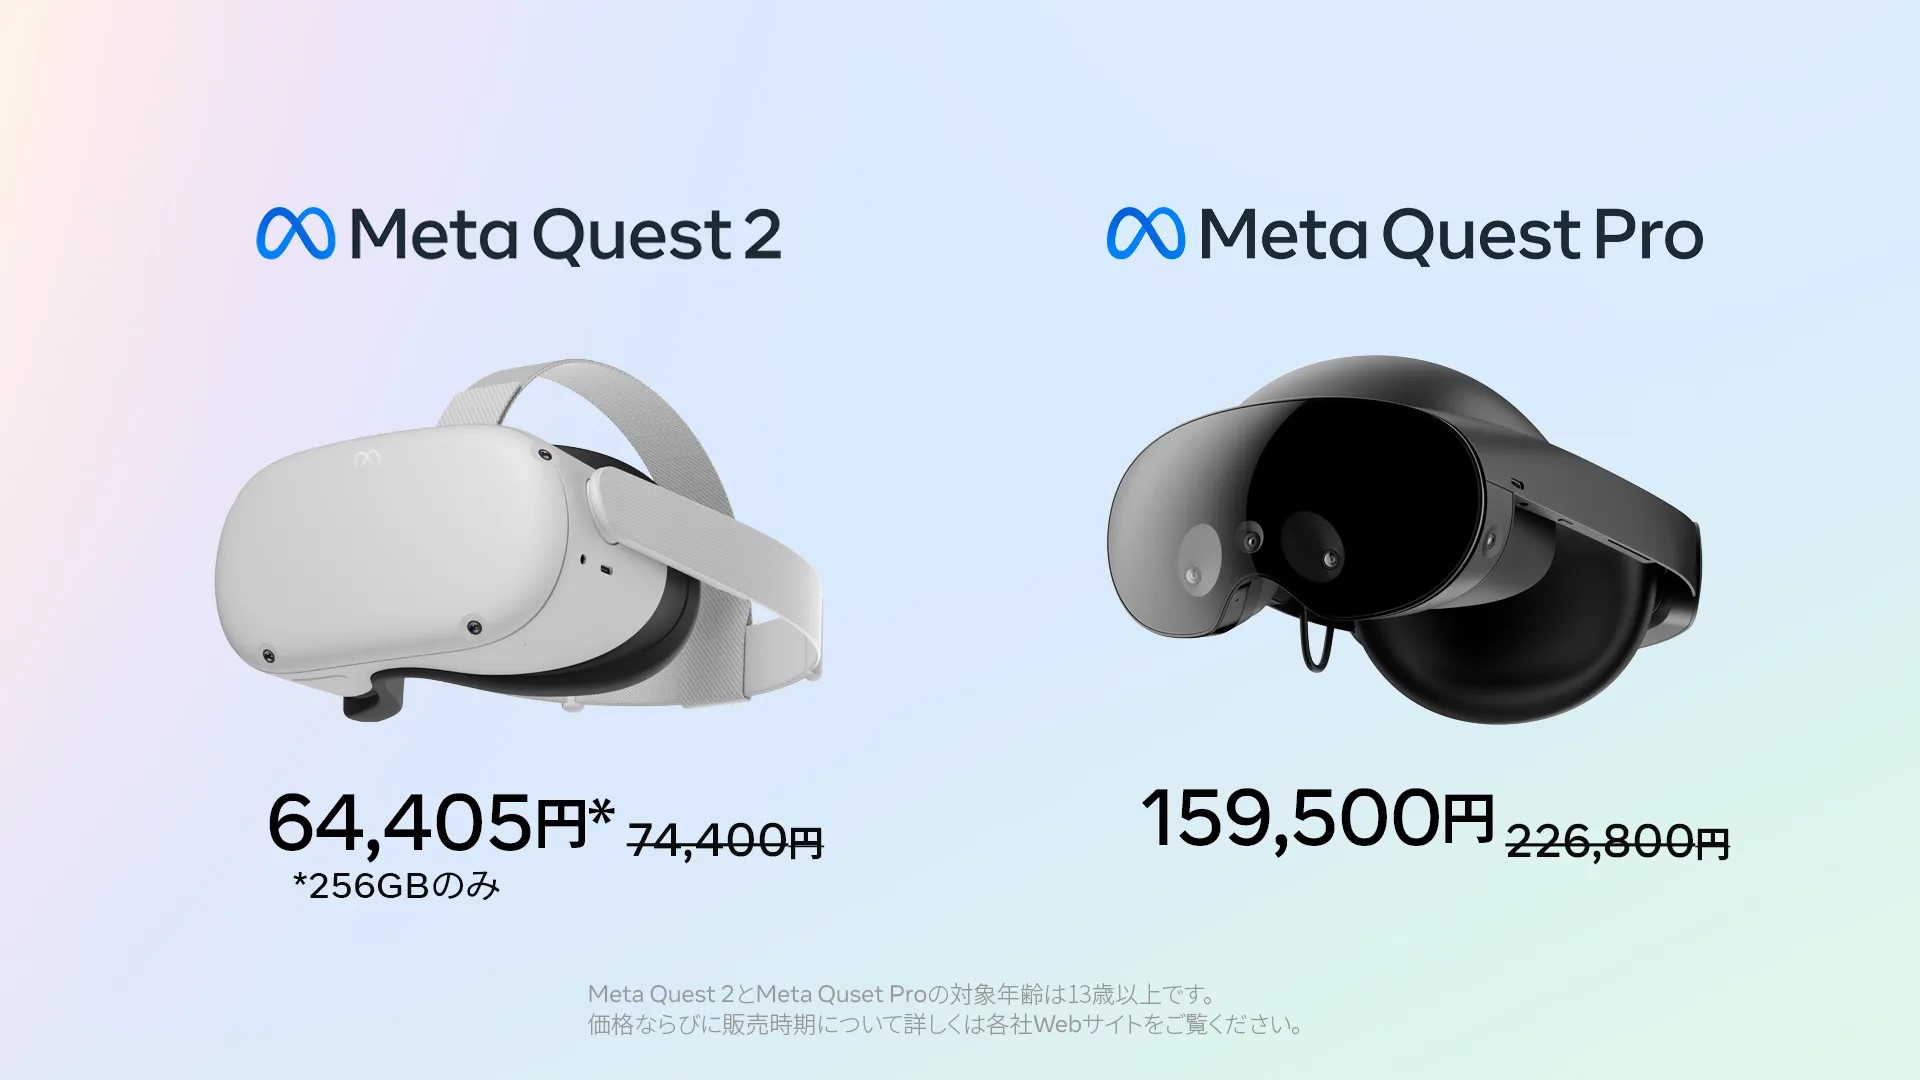 Meta Quest Proが6万7,300円の大幅値下げ。Meta Quest 2 256GBも約1万